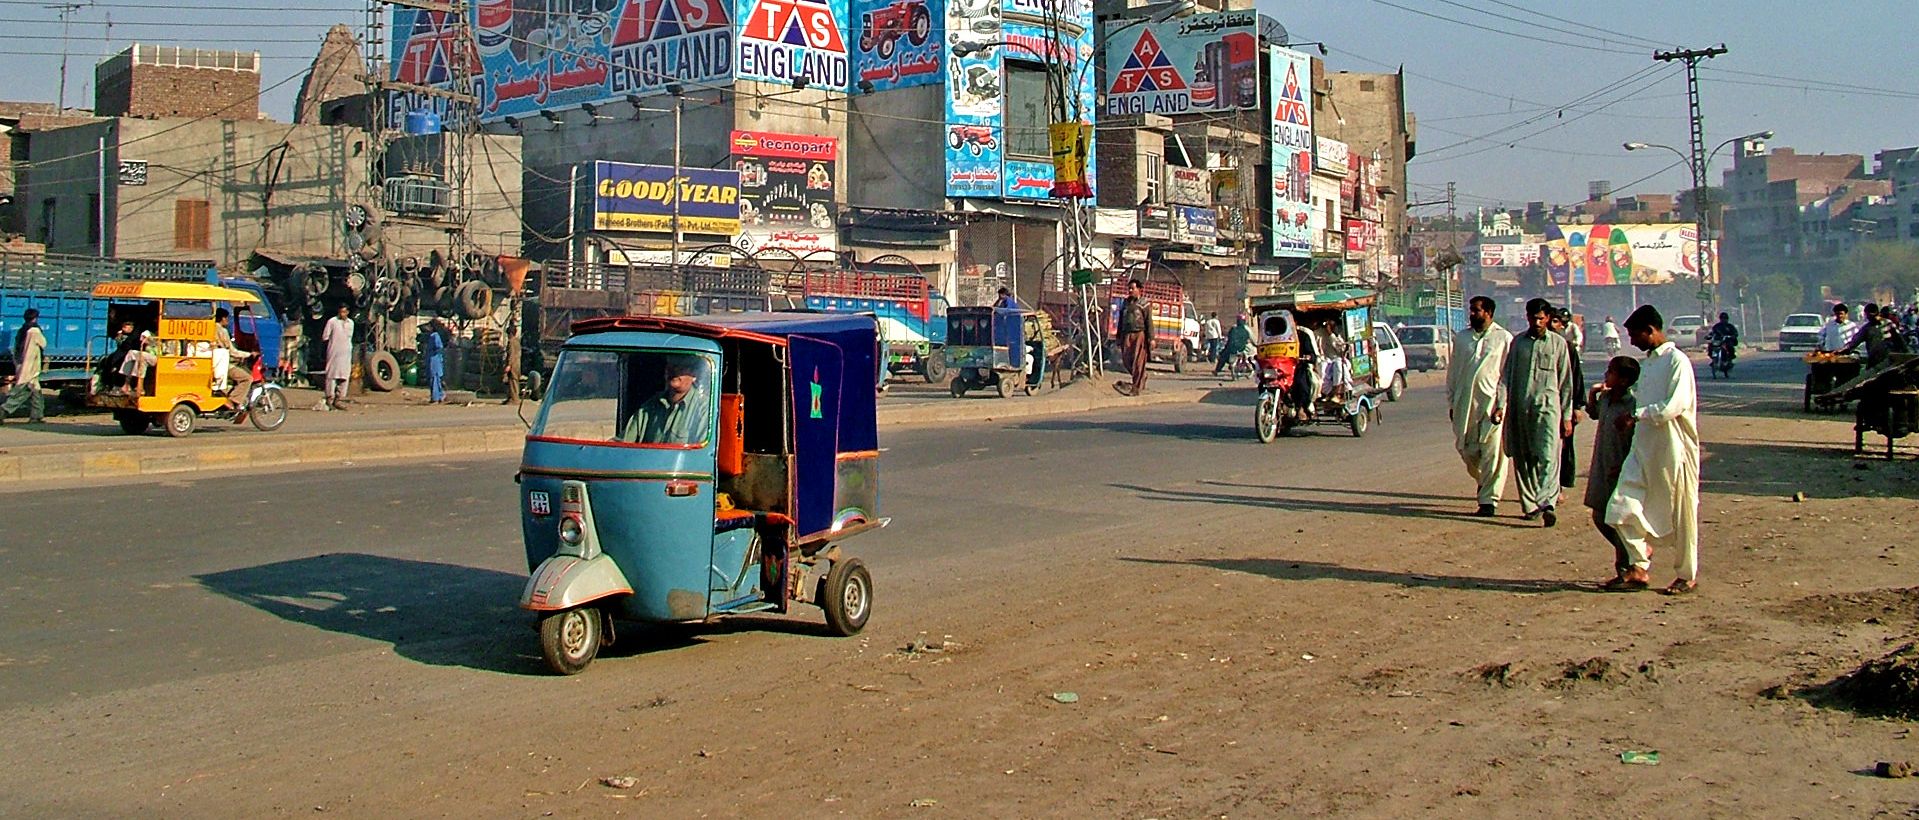 Au Pakistan, les rickshaws permettent à de nombreuses familles pauvres de gagner leur vie | © Guillem Vellut/Flickr/CC BY 2.0